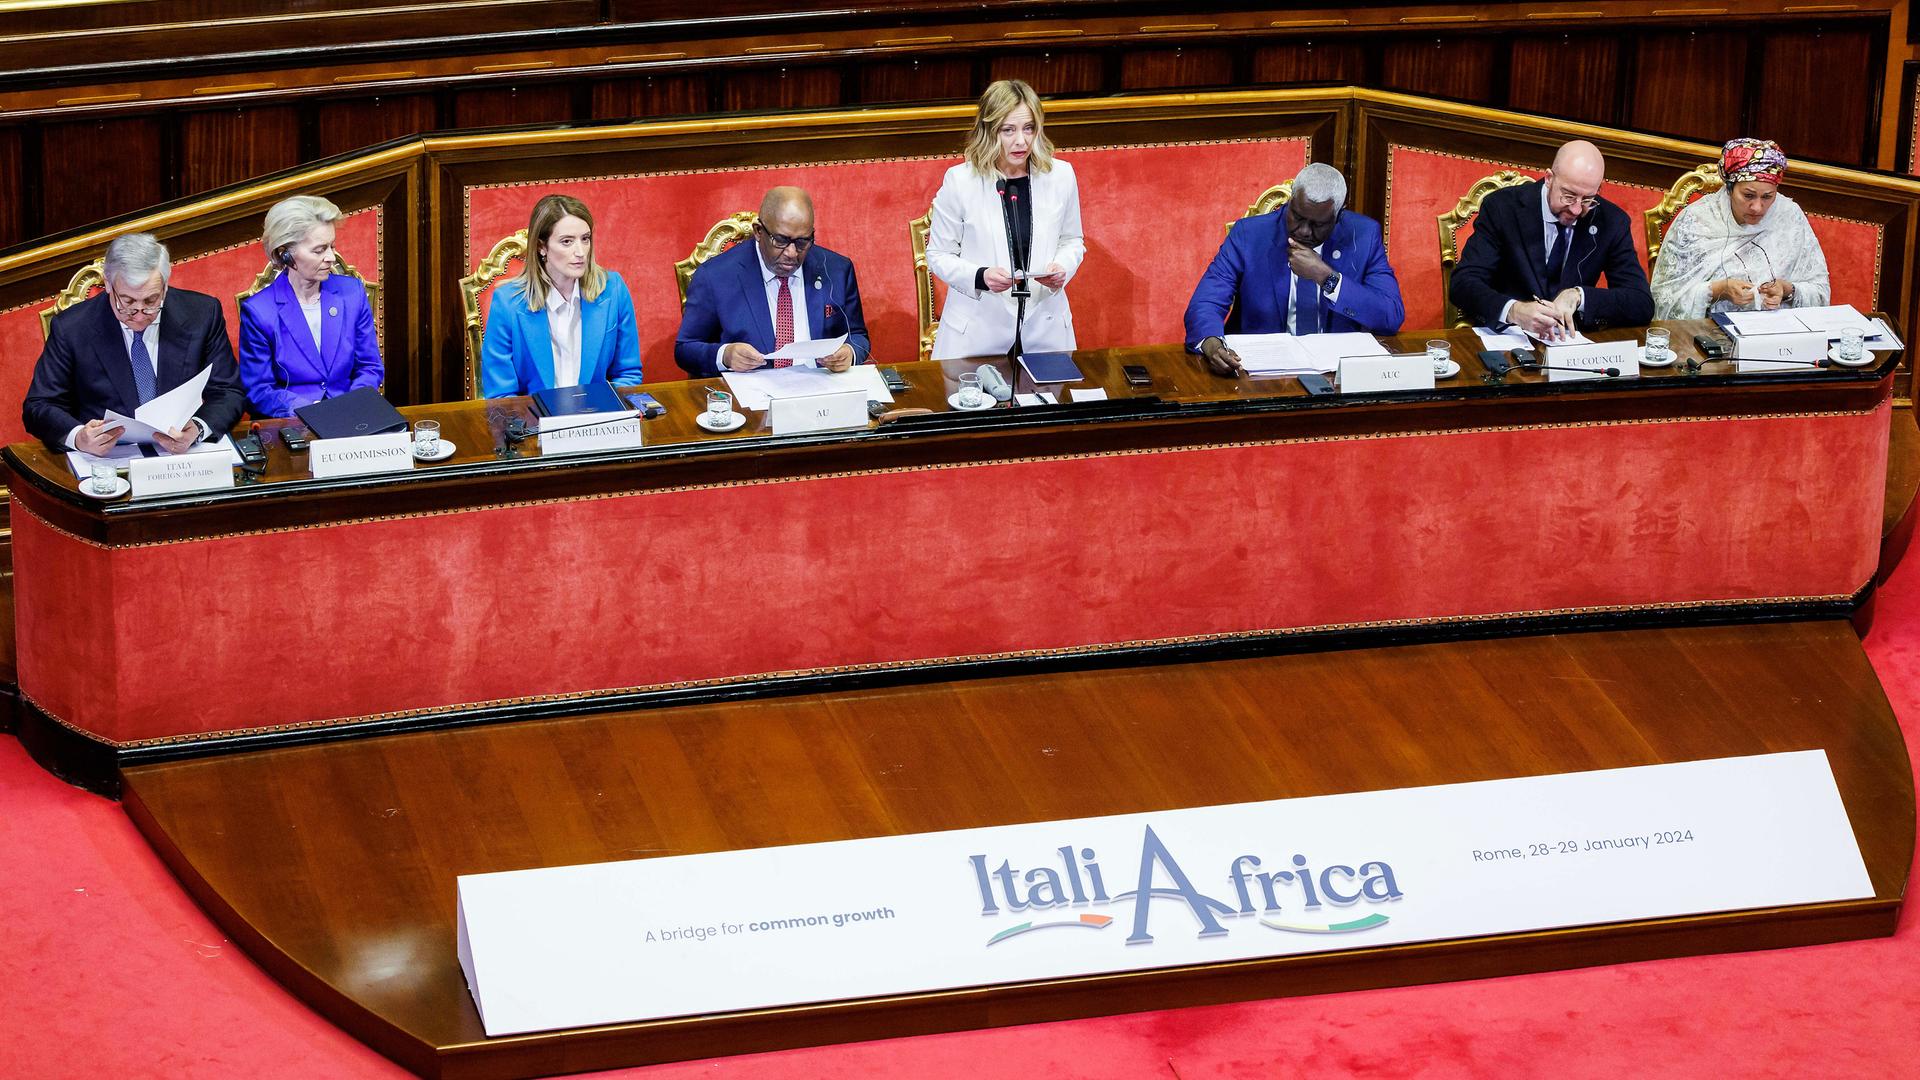 Rom: Giorgia Meloni (3.v.r), Ministerpräsidentin von Italien, hält eine Rede im Rahmen des Italien-Afrika-Gipfels. Neben ihr sitzen Ursula von der Leyen (2.v.l), EU-Kommissionspräsidentin, sowie Charles Michel (2.v.r), Präsident des Europäischen Rates.